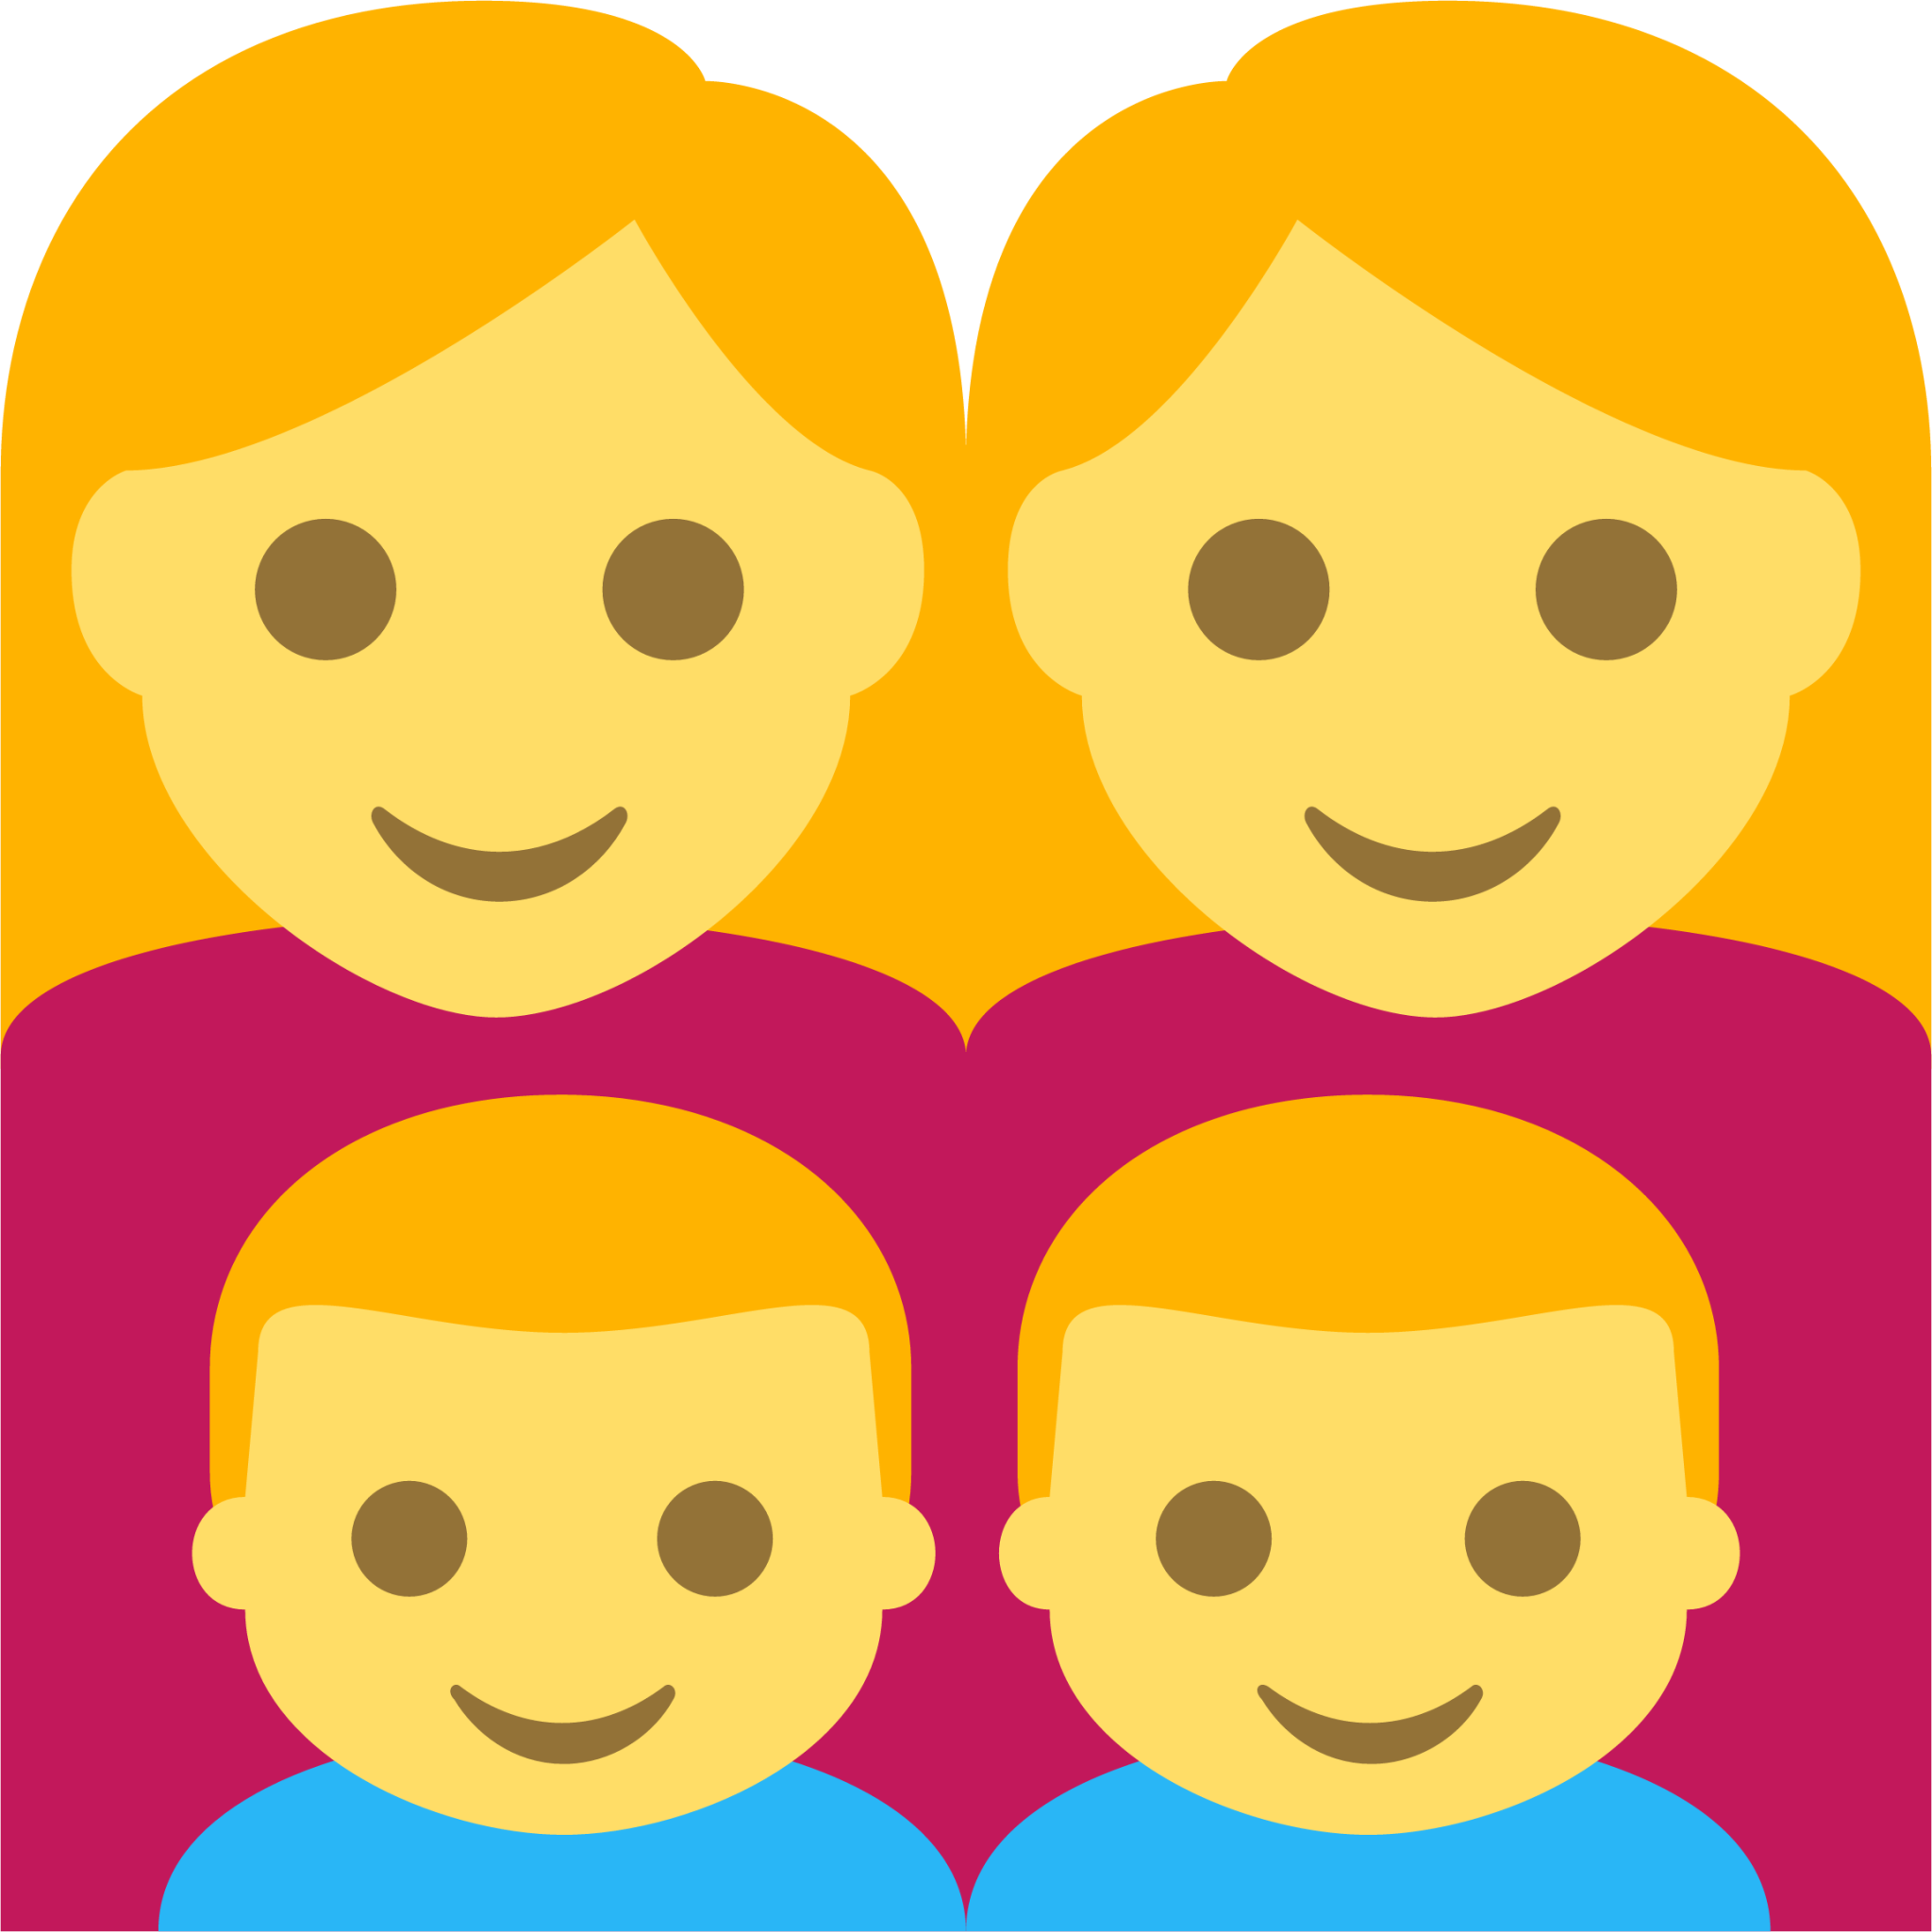 family (woman,woman,boy,boy) emoji